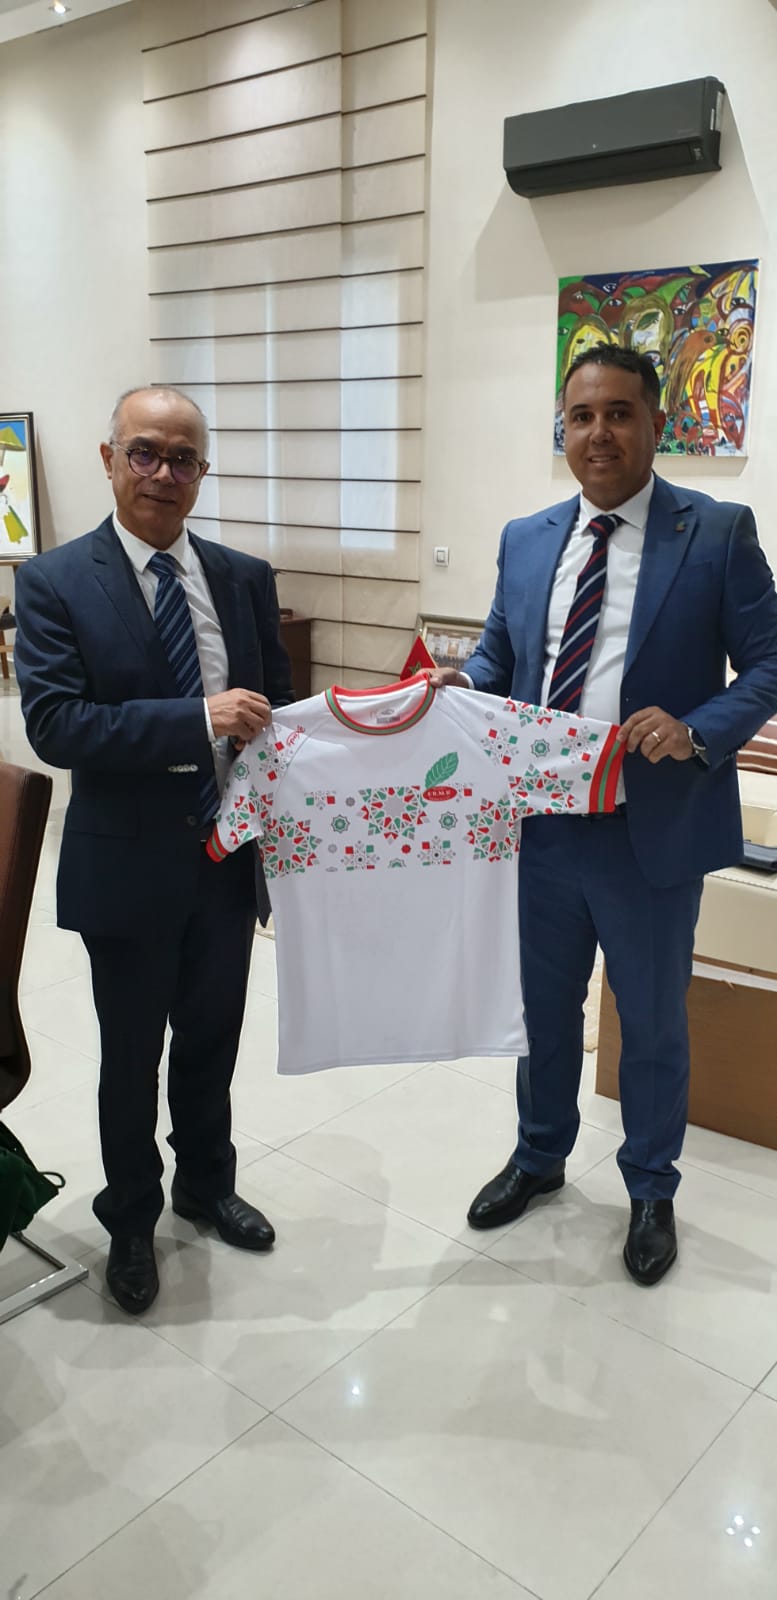 M. Chakib Benmoussa reçoit le Président de la Fédération Royale Marocaine de Rugby